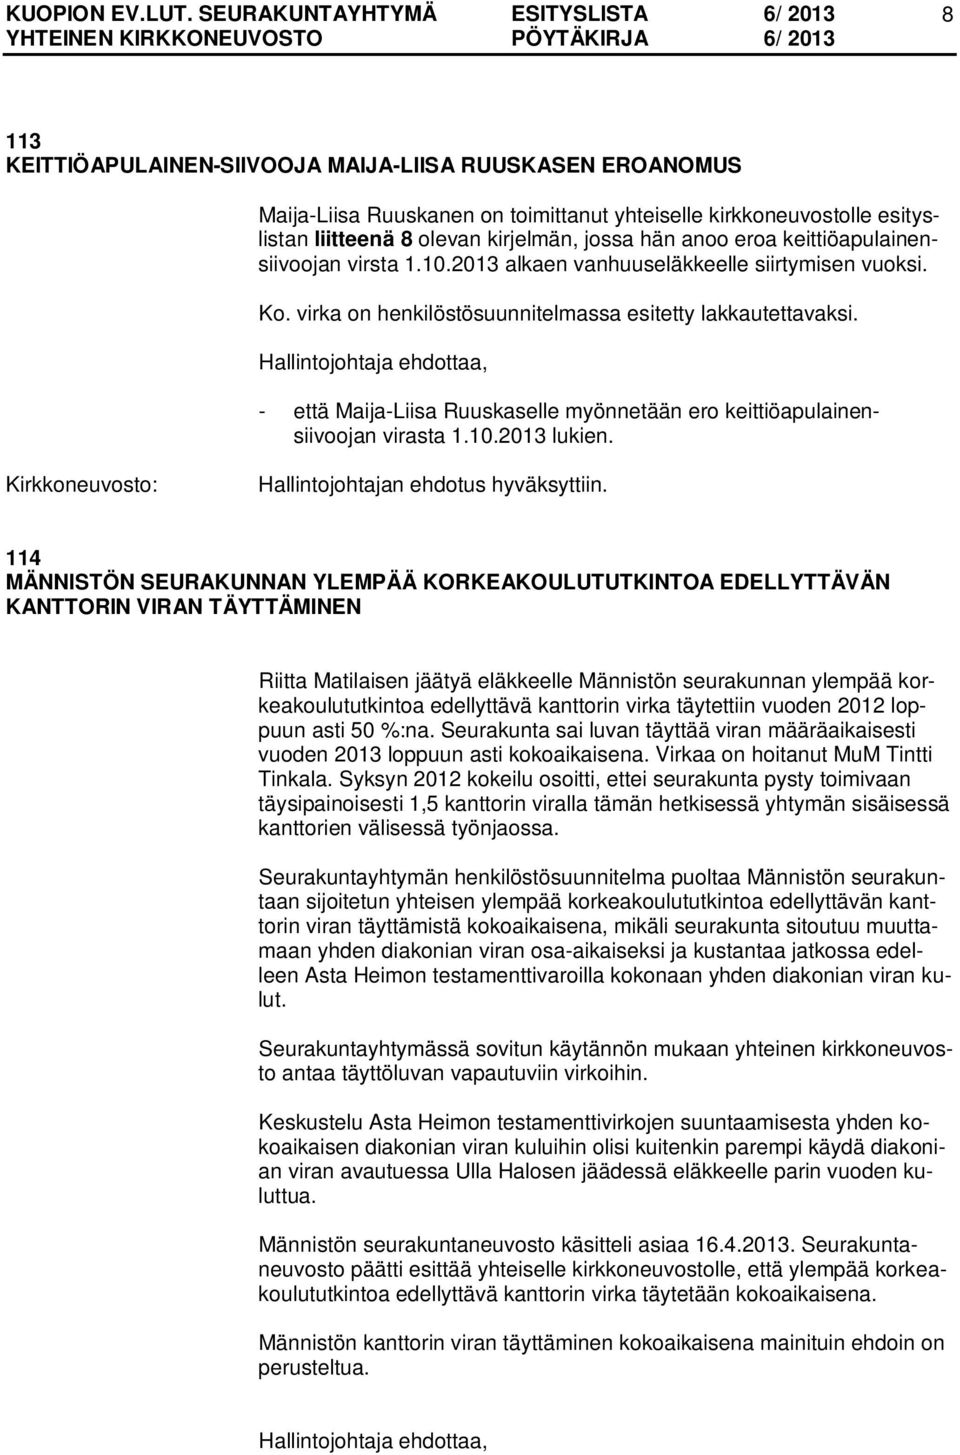 Hallintojohtaja ehdottaa, - että Maija-Liisa Ruuskaselle myönnetään ero keittiöapulainensiivoojan virasta 1.10.2013 lukien. Hallintojohtajan ehdotus hyväksyttiin.